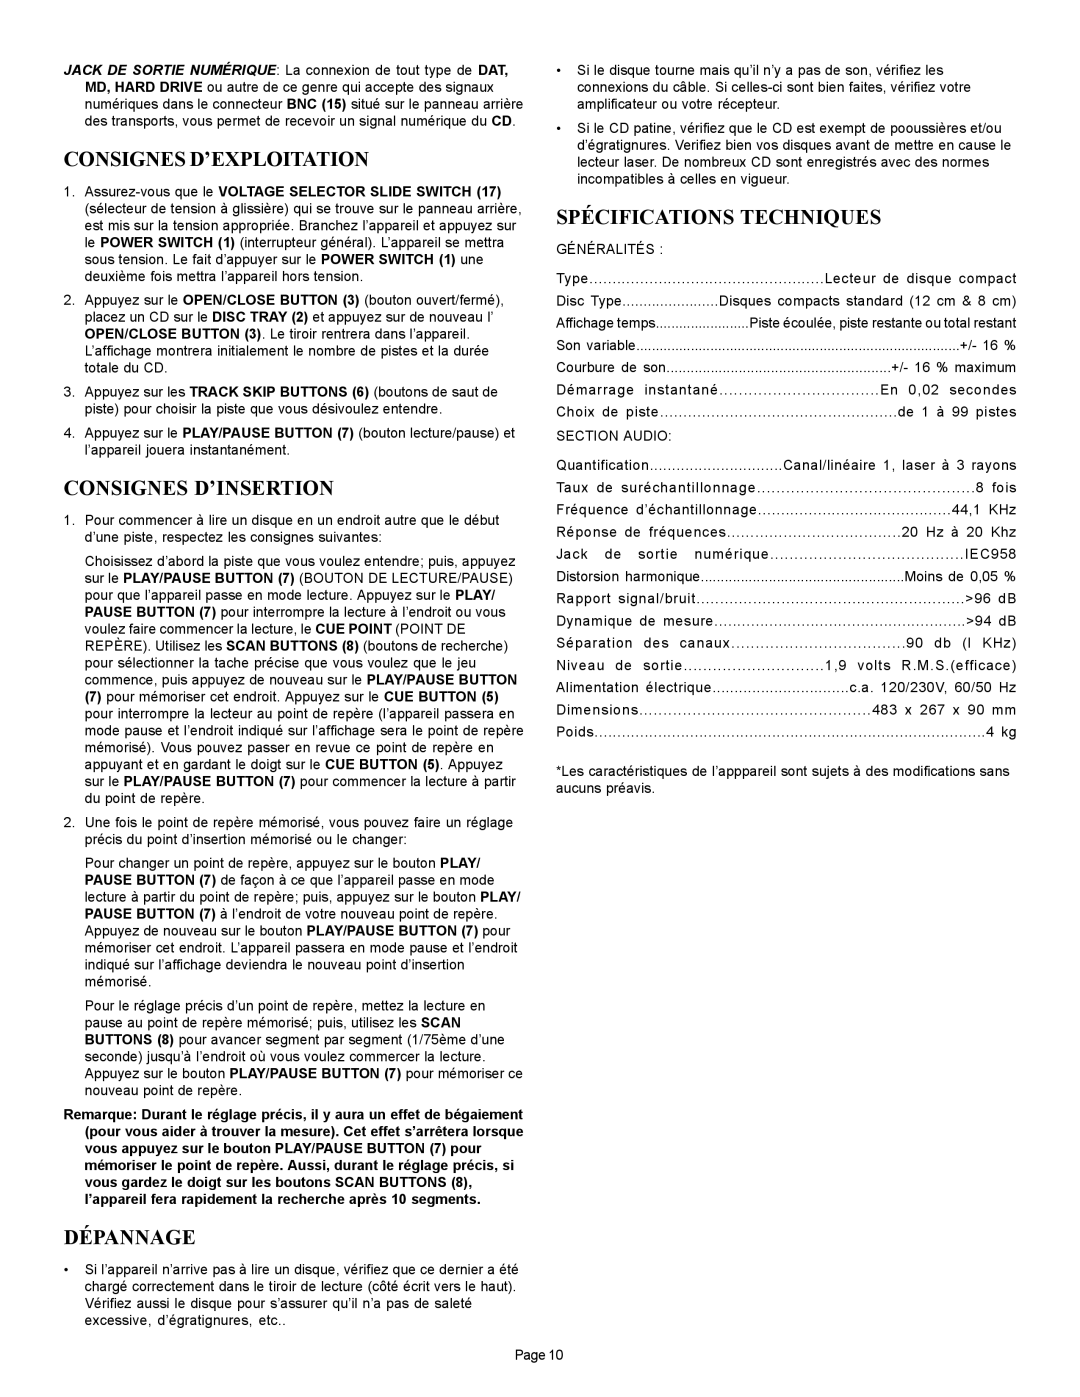 Gemini CD-110 manual Consignes D’Exploitation, Consignes D’Insertion, Dépannage, Spécifications Techniques 